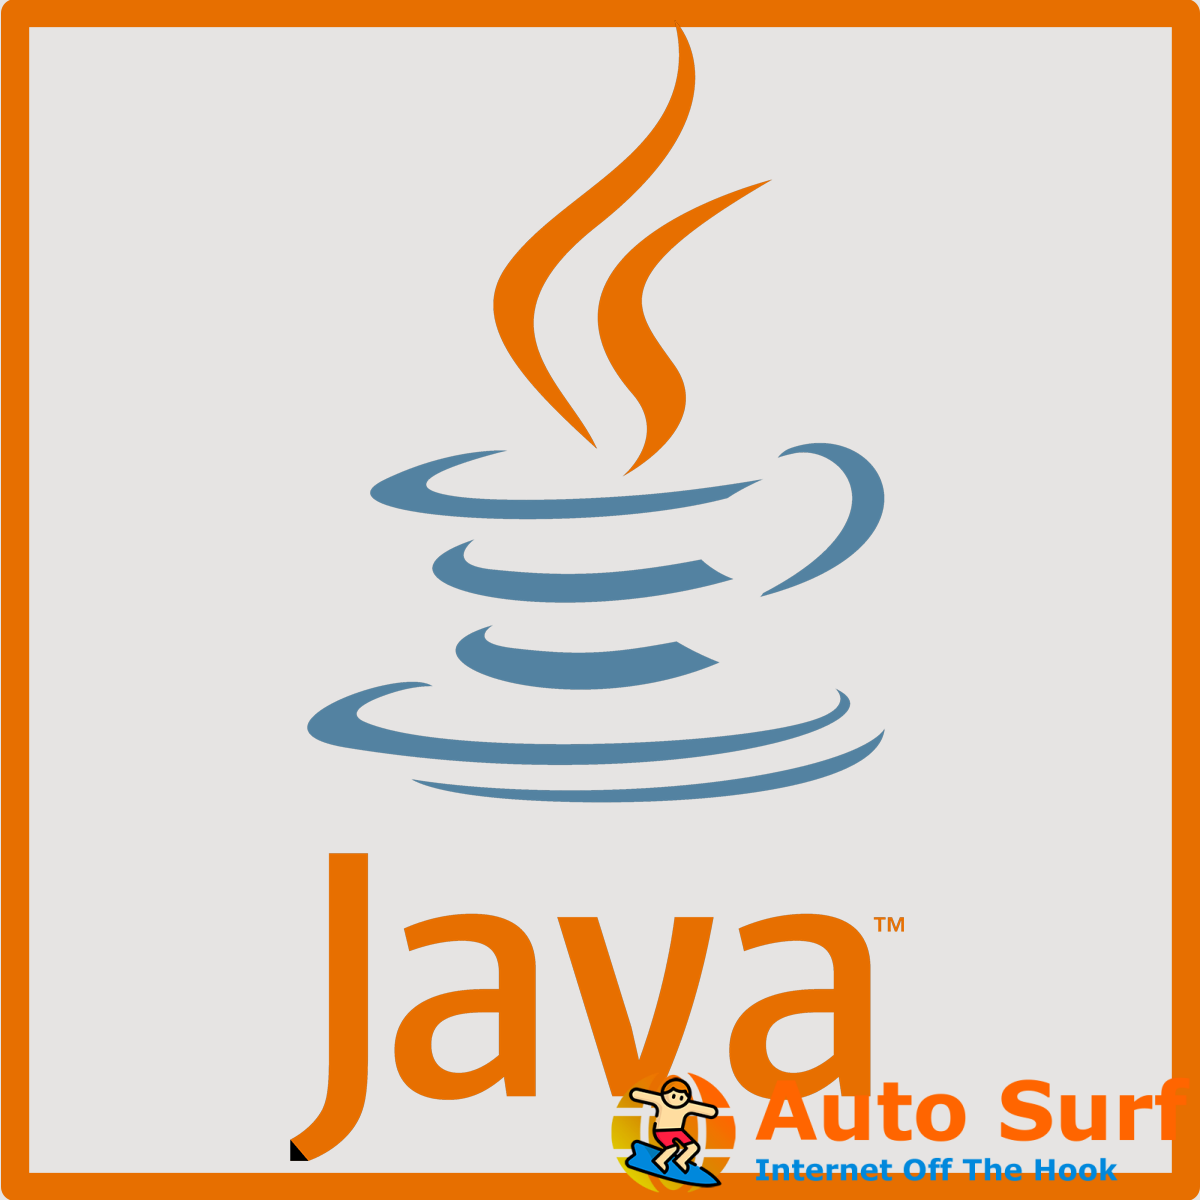 no se puede iniciar el instalador de actualización de Java, el usuario canceló la operación